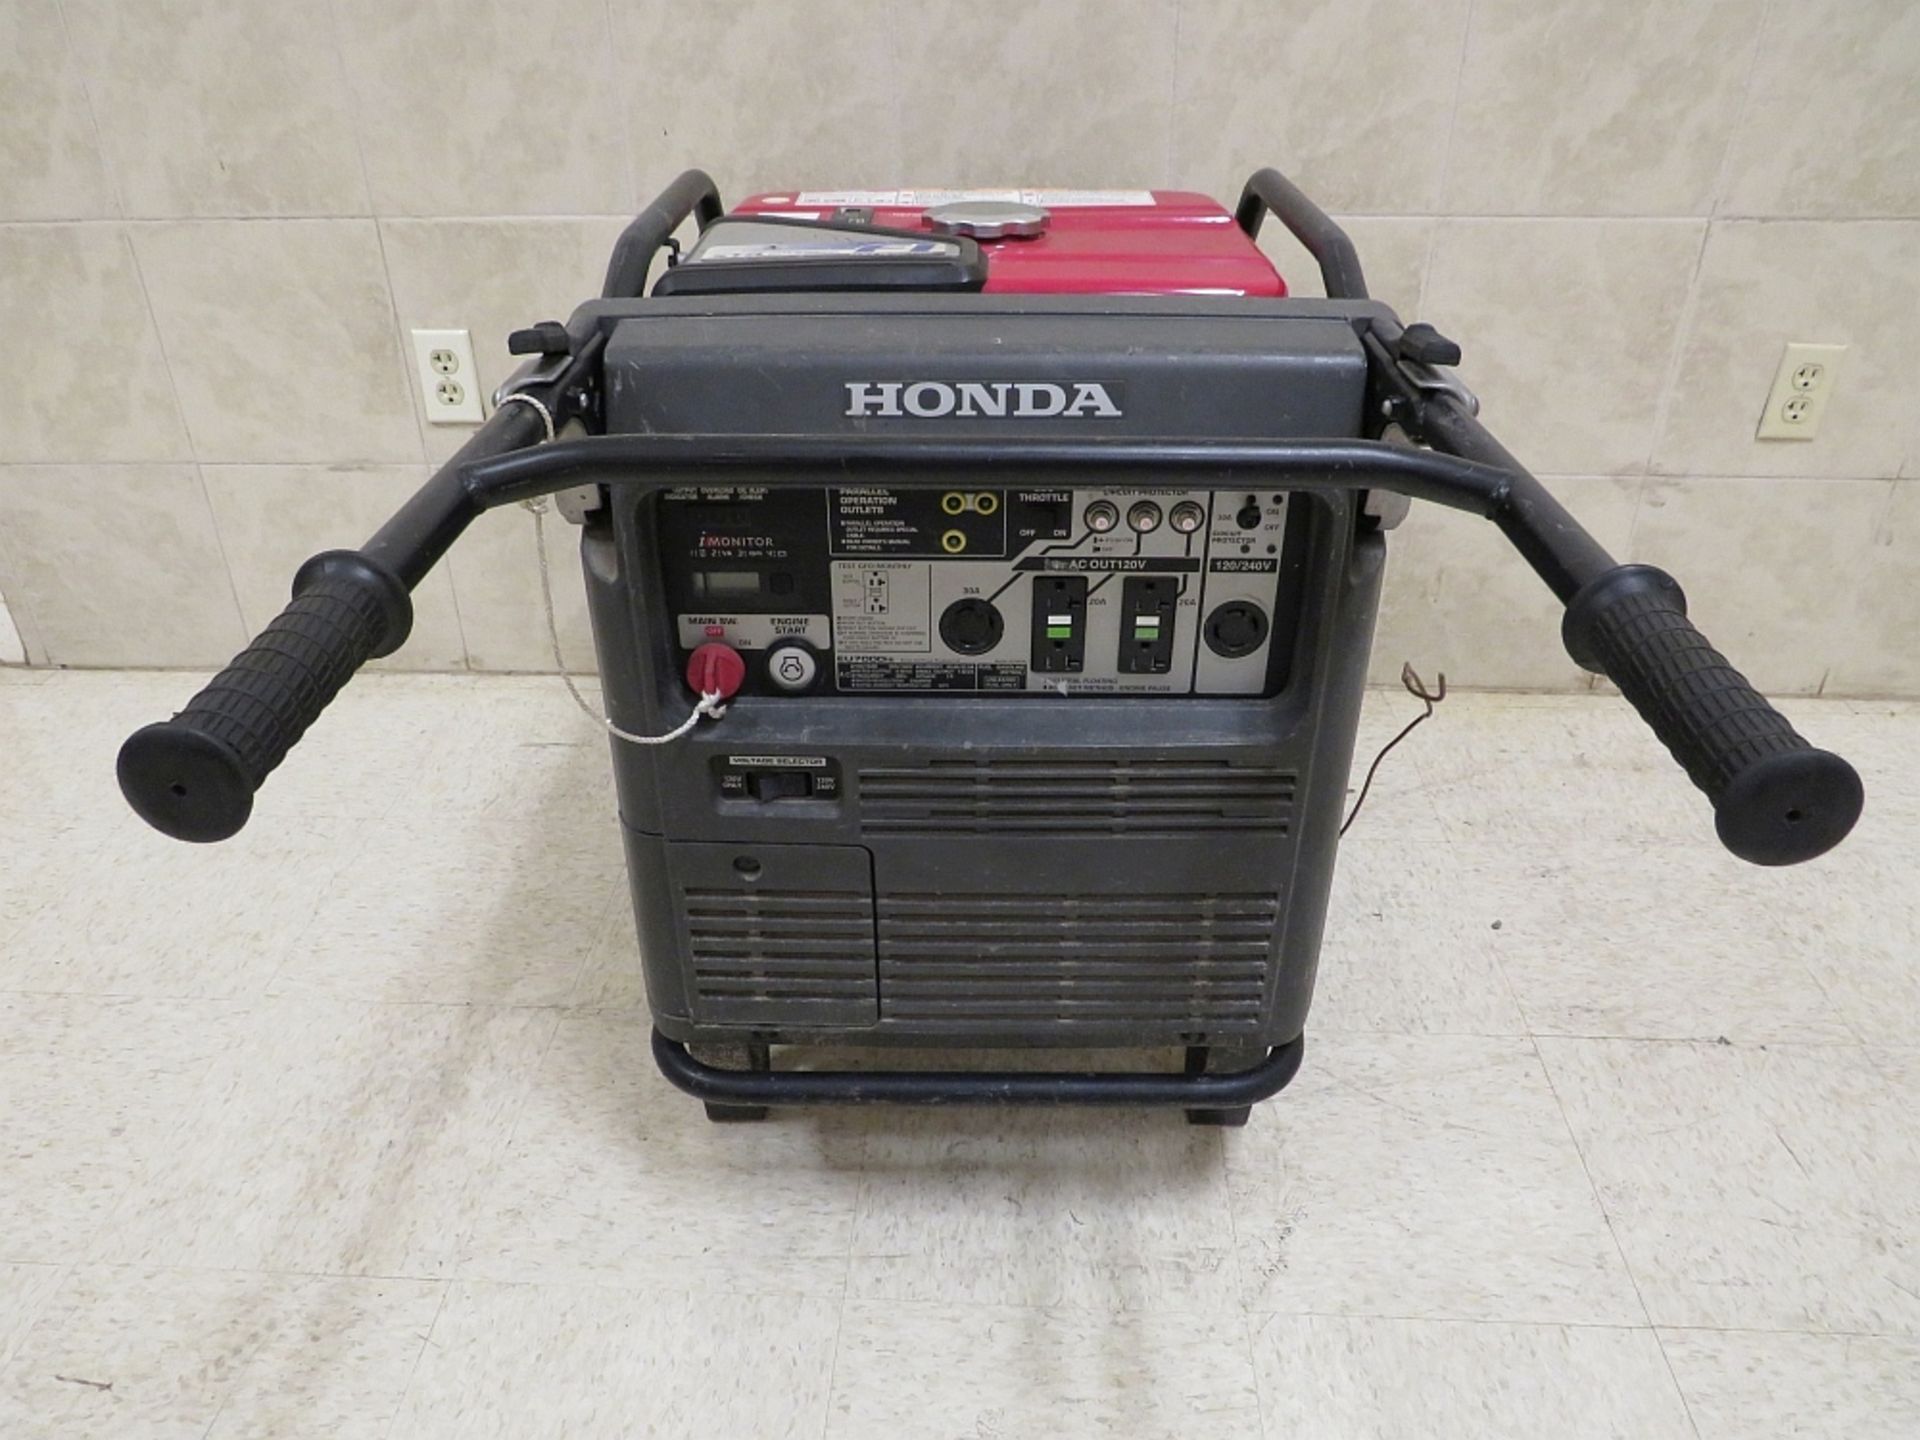 Honda EU7000is Generator - 7kw, Quiet - Image 2 of 2